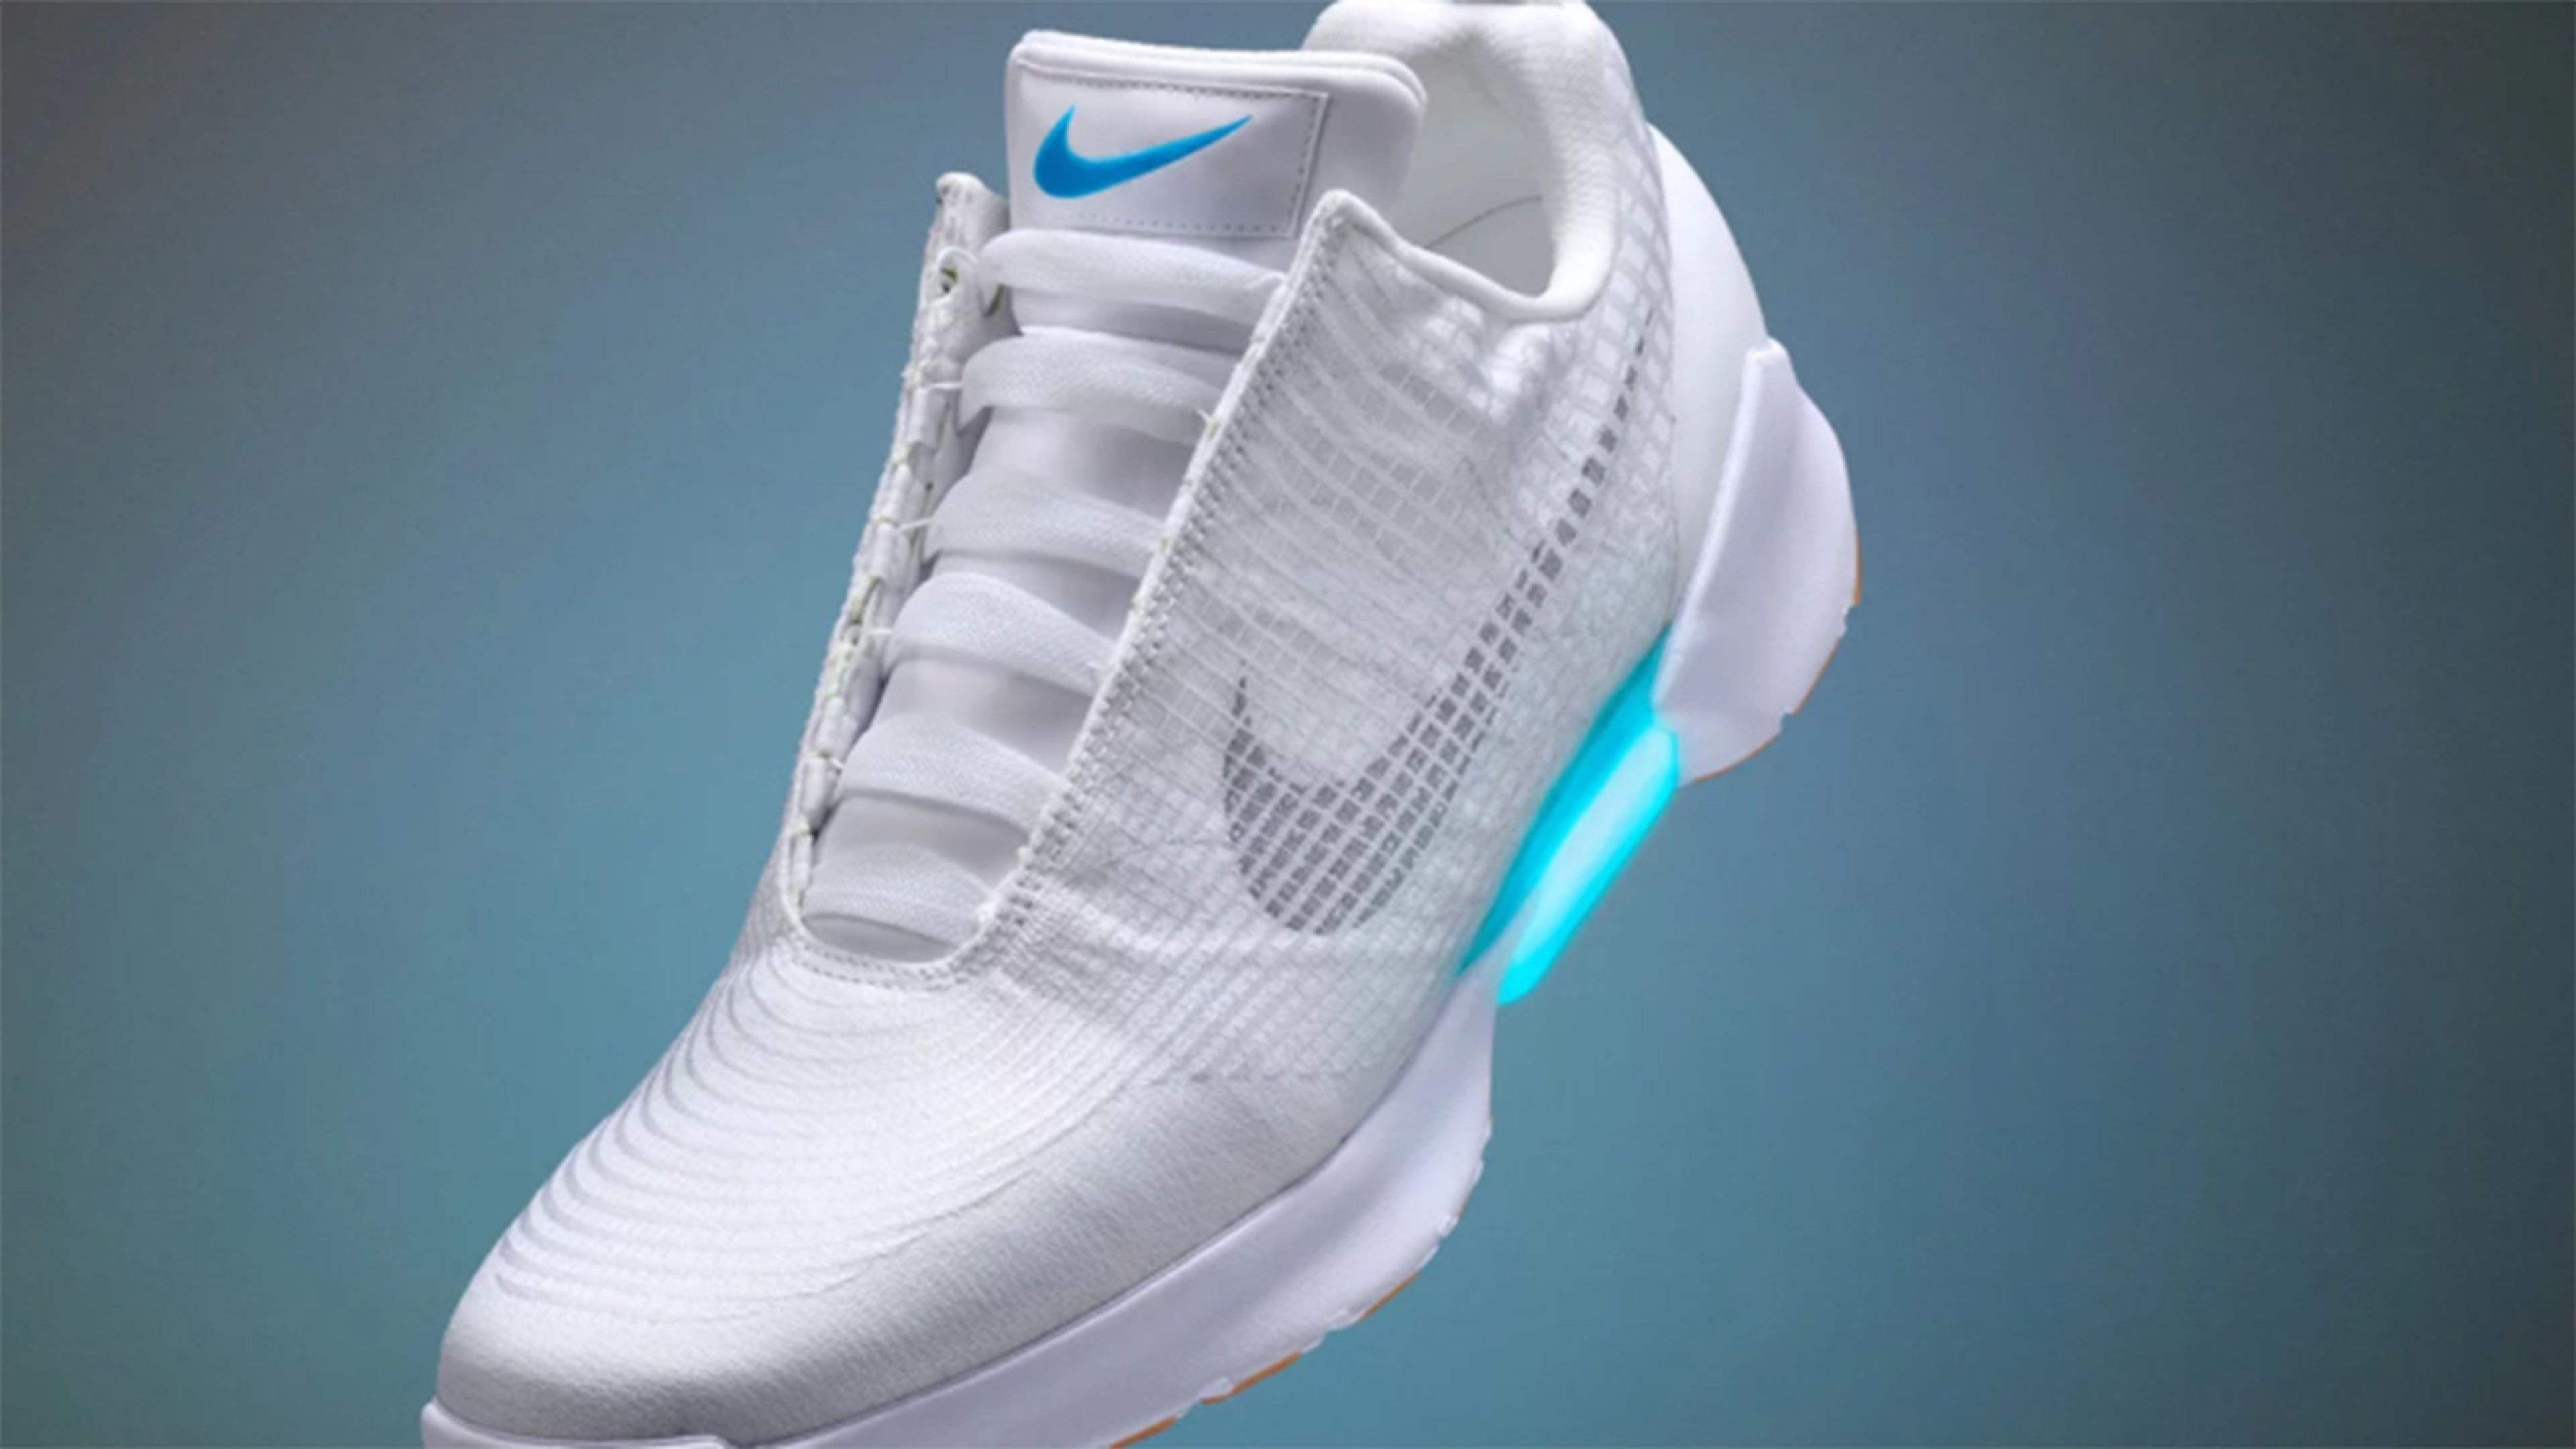 Nike lanzará un modelo más barato de sus con robocordones en 2019 | Computer Hoy